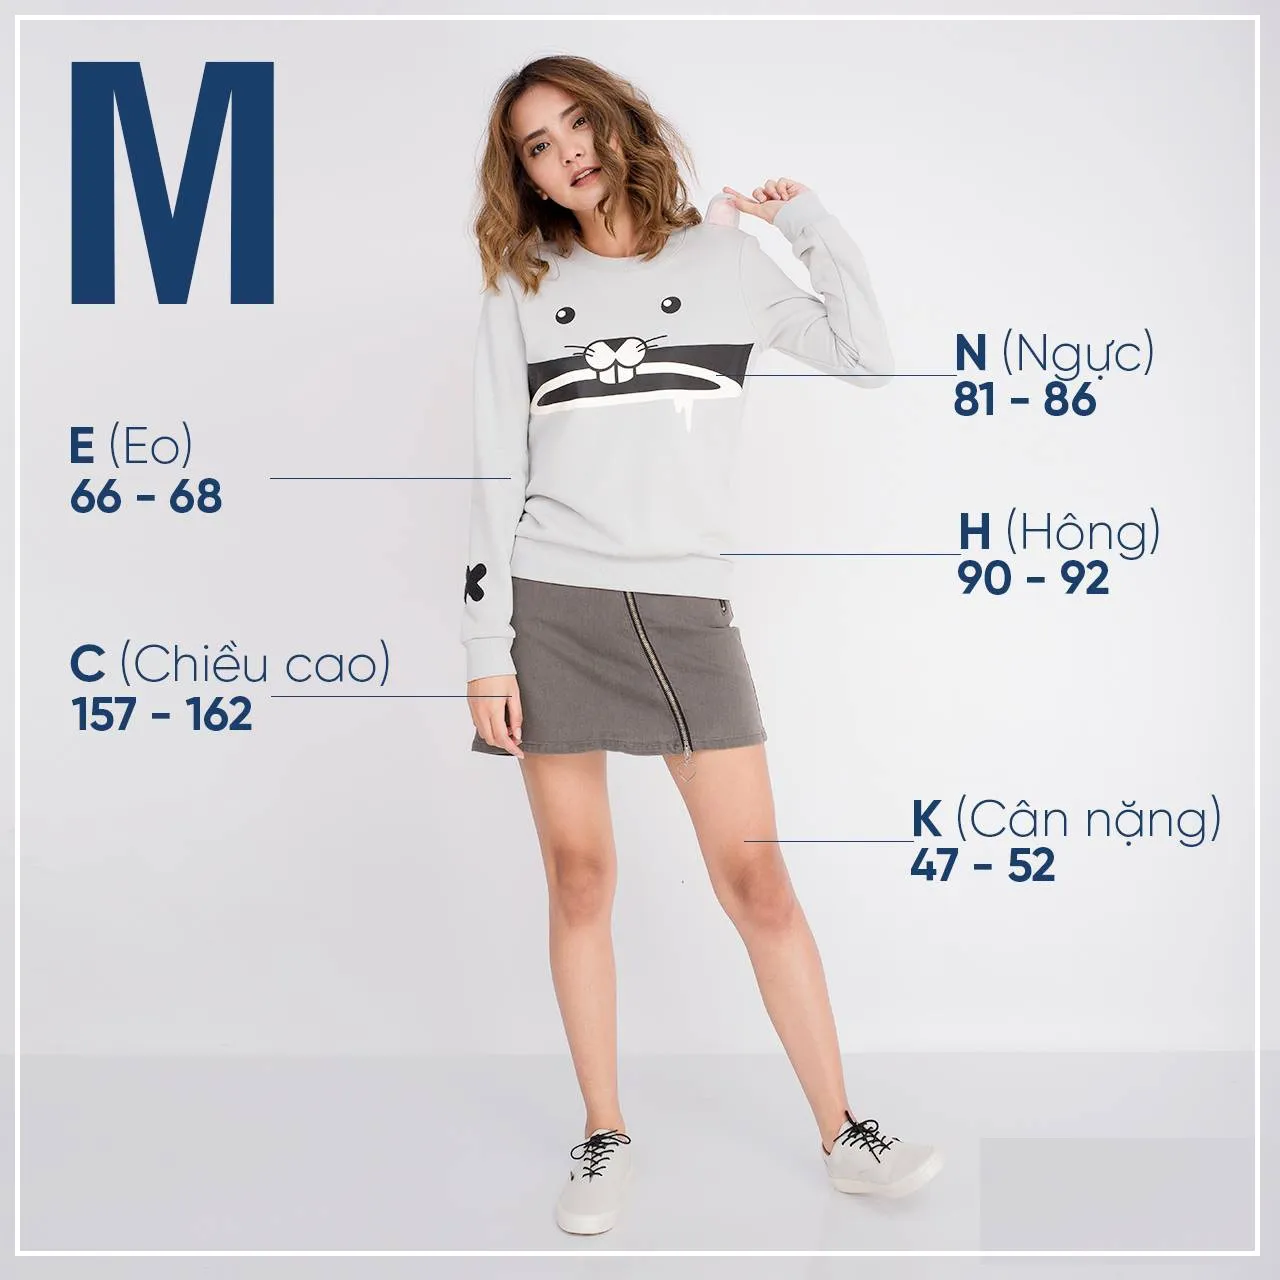 Tìm hiểu chi tiết về size m là bao nhiêu kg cho nữ và cách đo chuẩn xác nhất